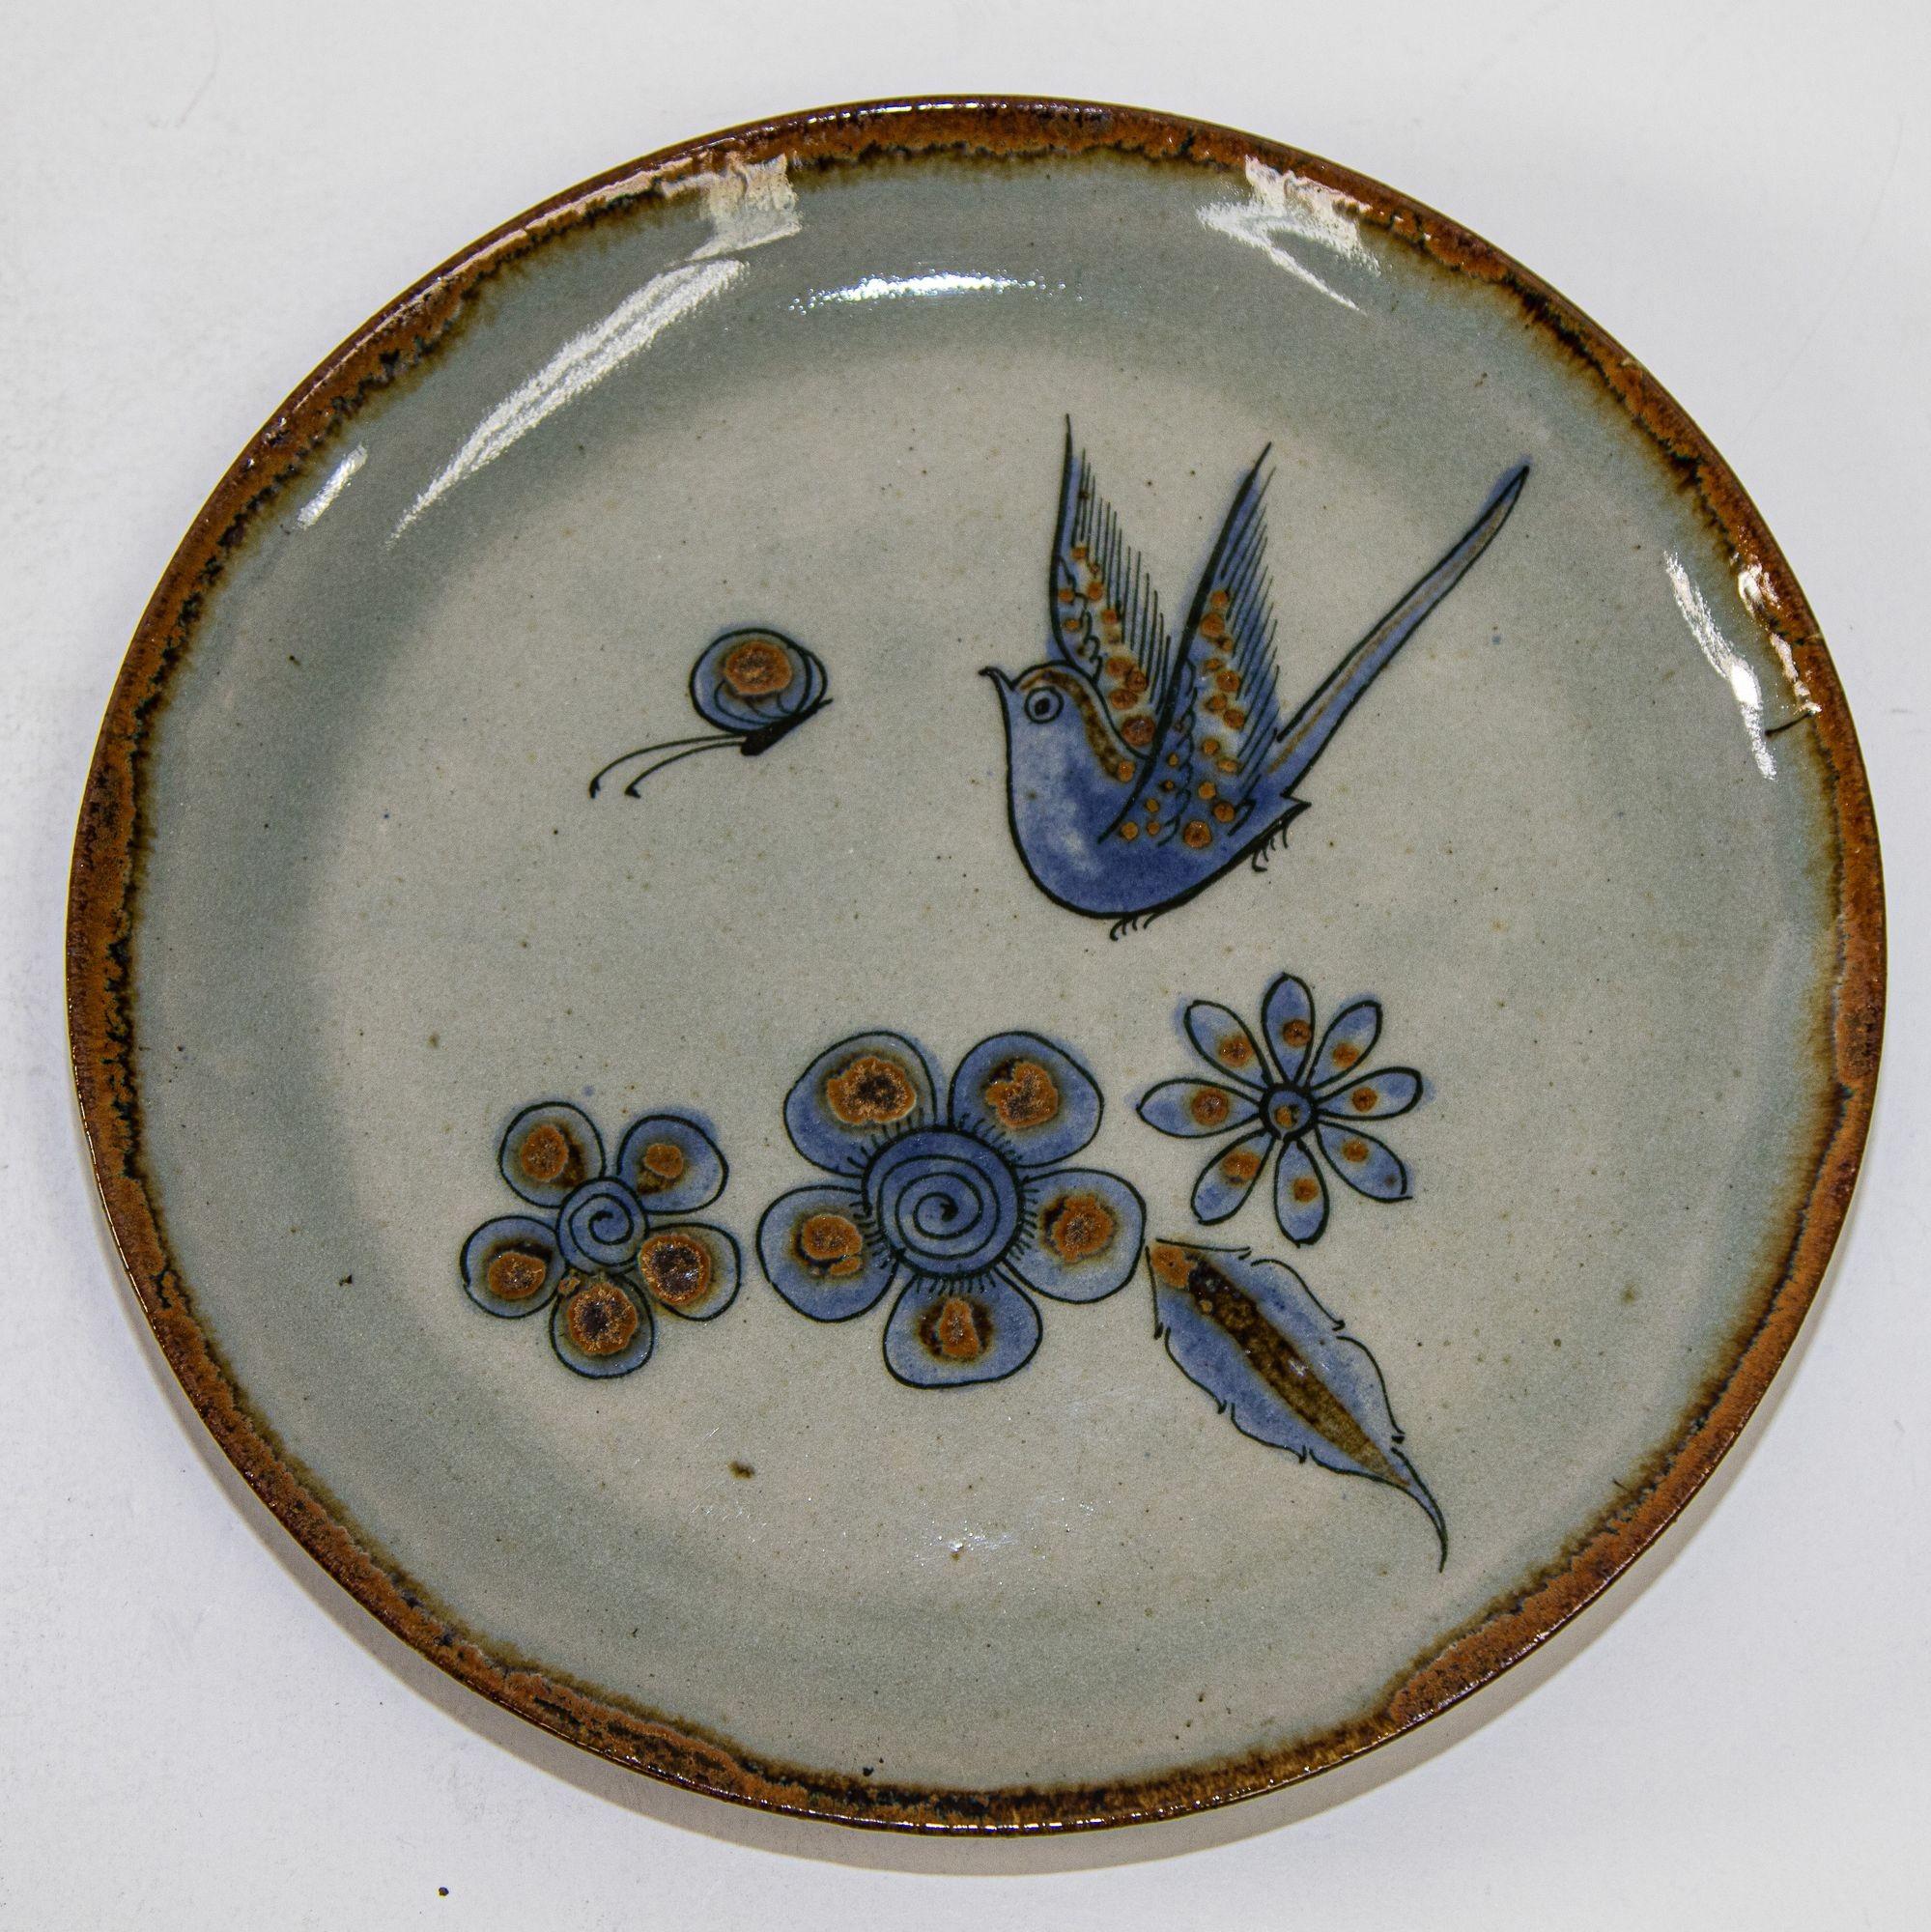 Assiette en céramique artisanale Ken Edwards Tonala Mexico Folk Art Pottery.
Vintage Ken Edwards Oiseau volant en céramique mexicaine de Tonala Pottery.
Magnifique poterie d'art mexicaine TONALA, fabriquée et peinte à la main.
Il présente un